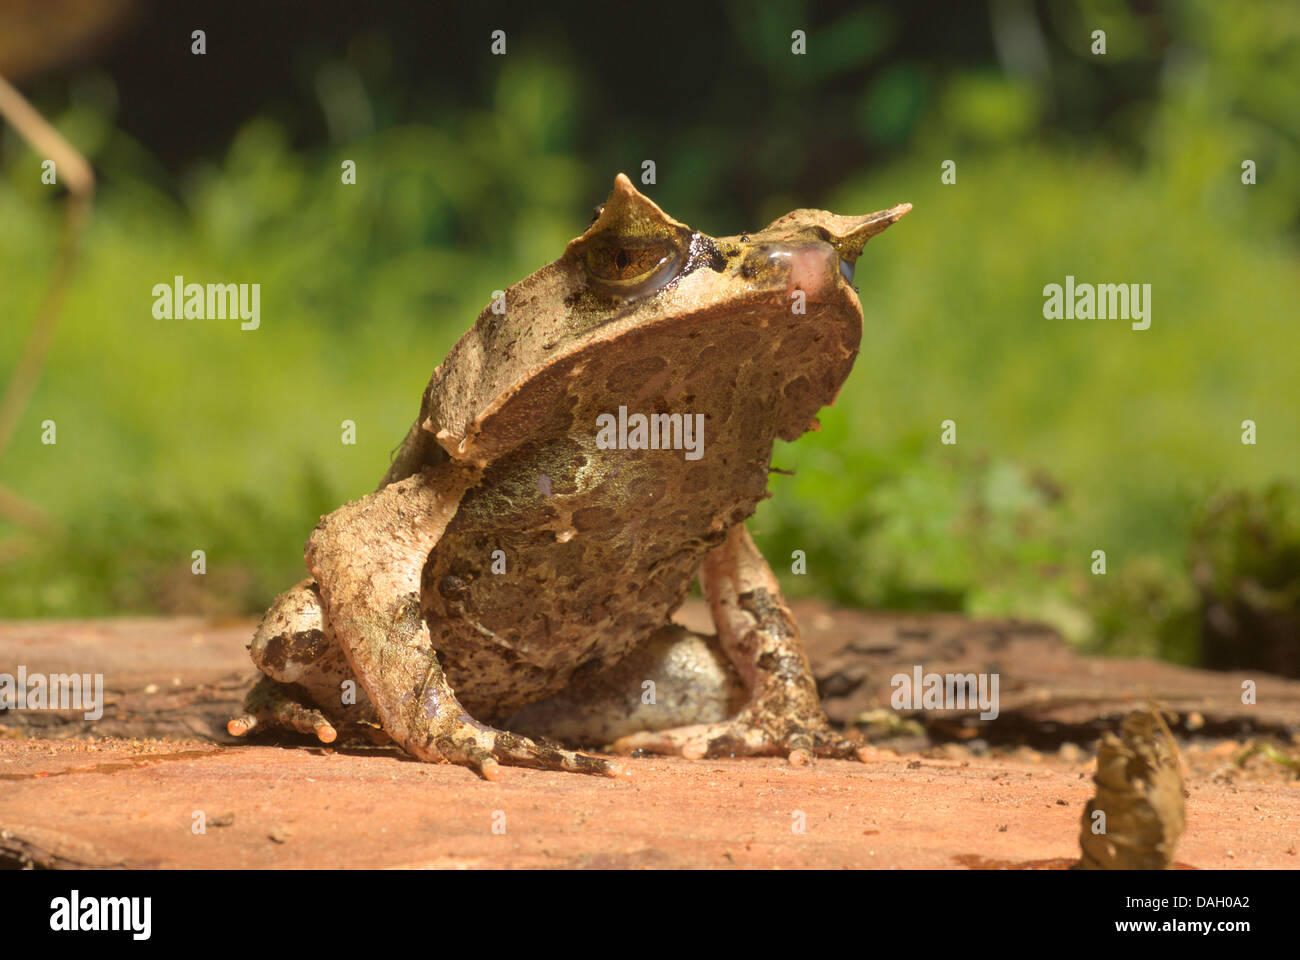 Malayan Horned Frog, grenouille cornue Asiatique, Asiatique, Javan Crapaud Grenouille cornue (Megophrys montana), sur une pierre Banque D'Images